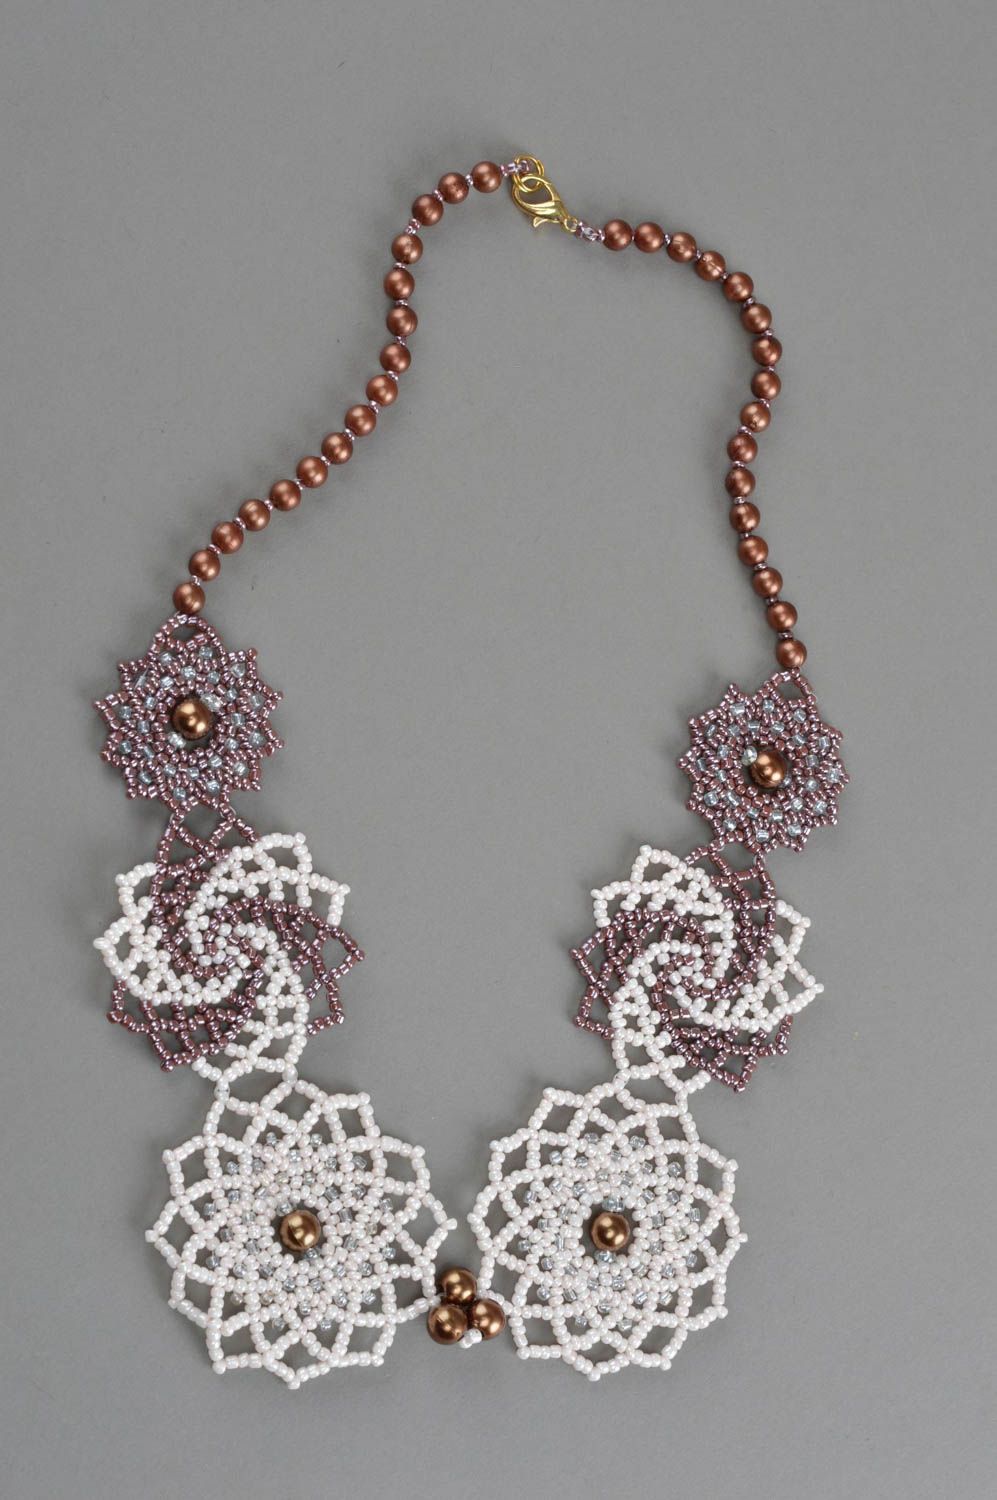 Ожерелье из бисера плетеное ручной работы оригинальное белое цветочное фото 2